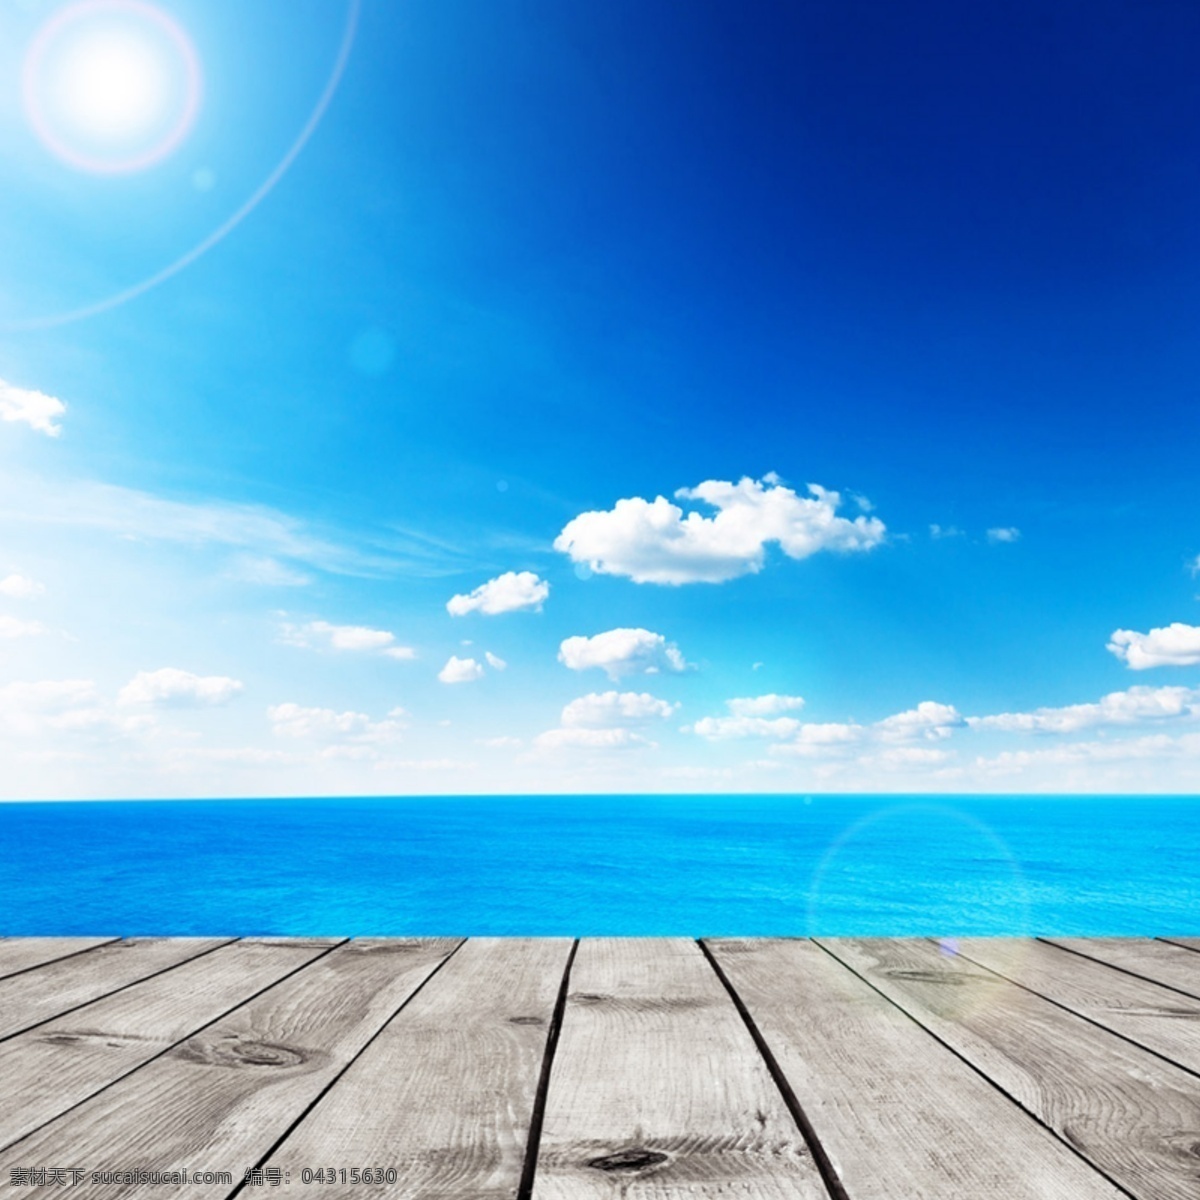 夏日 电商 晴朗 背景 图 模板 白云 打折 大海 蓝色 蓝天 冷色 淘宝 夏天